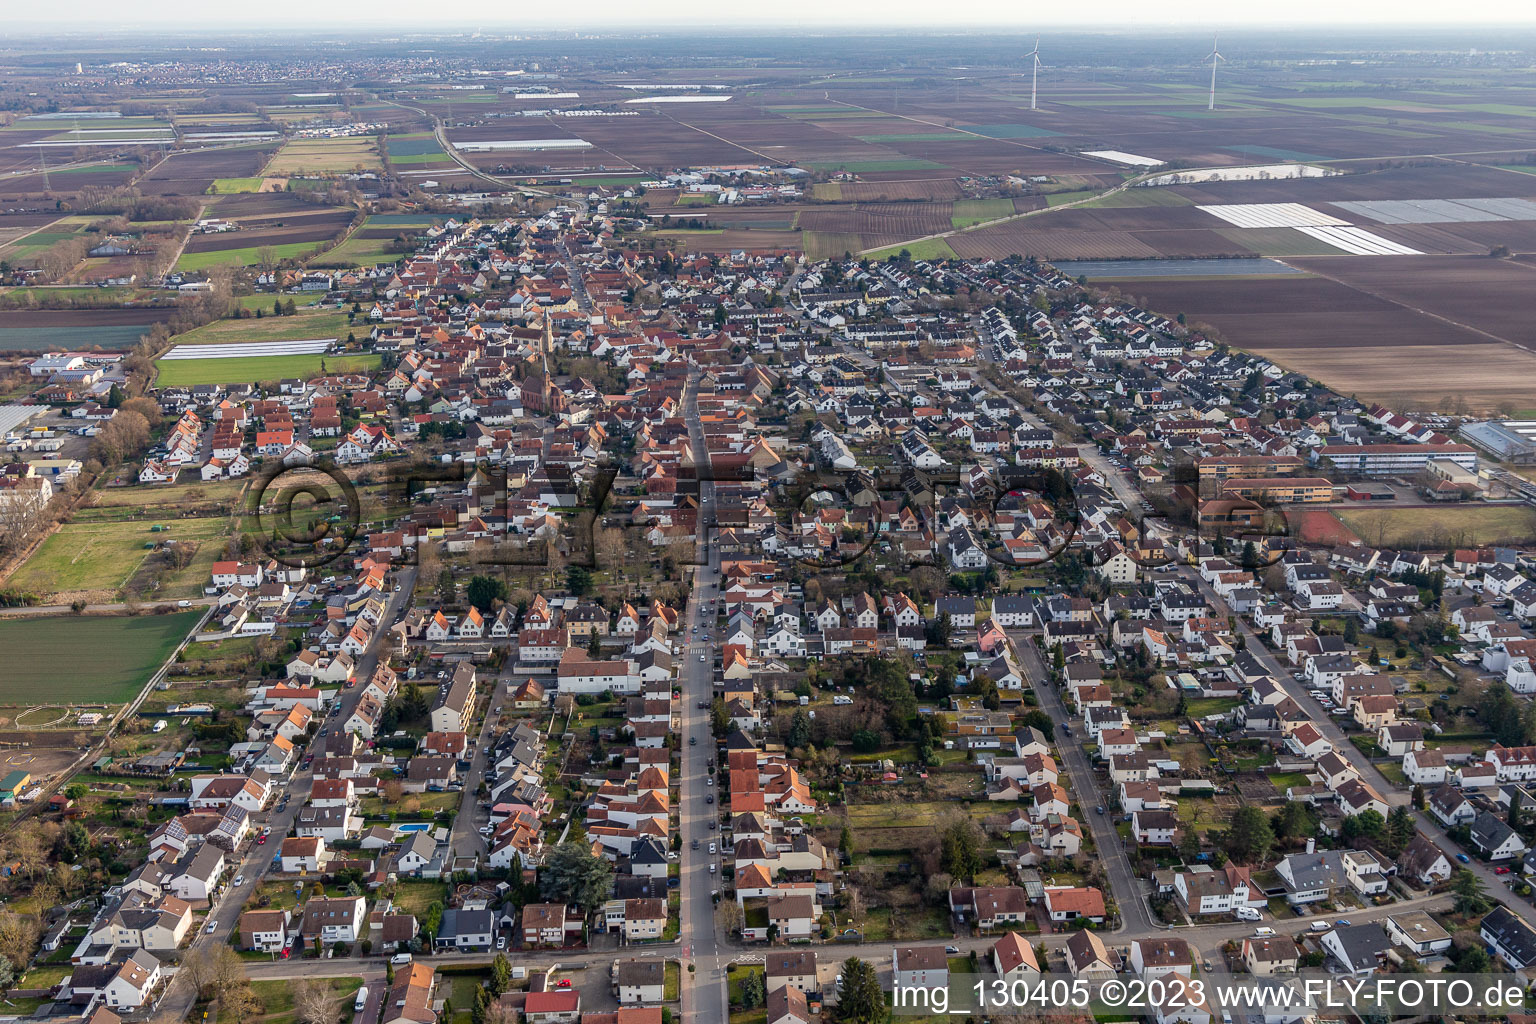 Aerial view of District Dannstadt in Dannstadt-Schauernheim in the state Rhineland-Palatinate, Germany